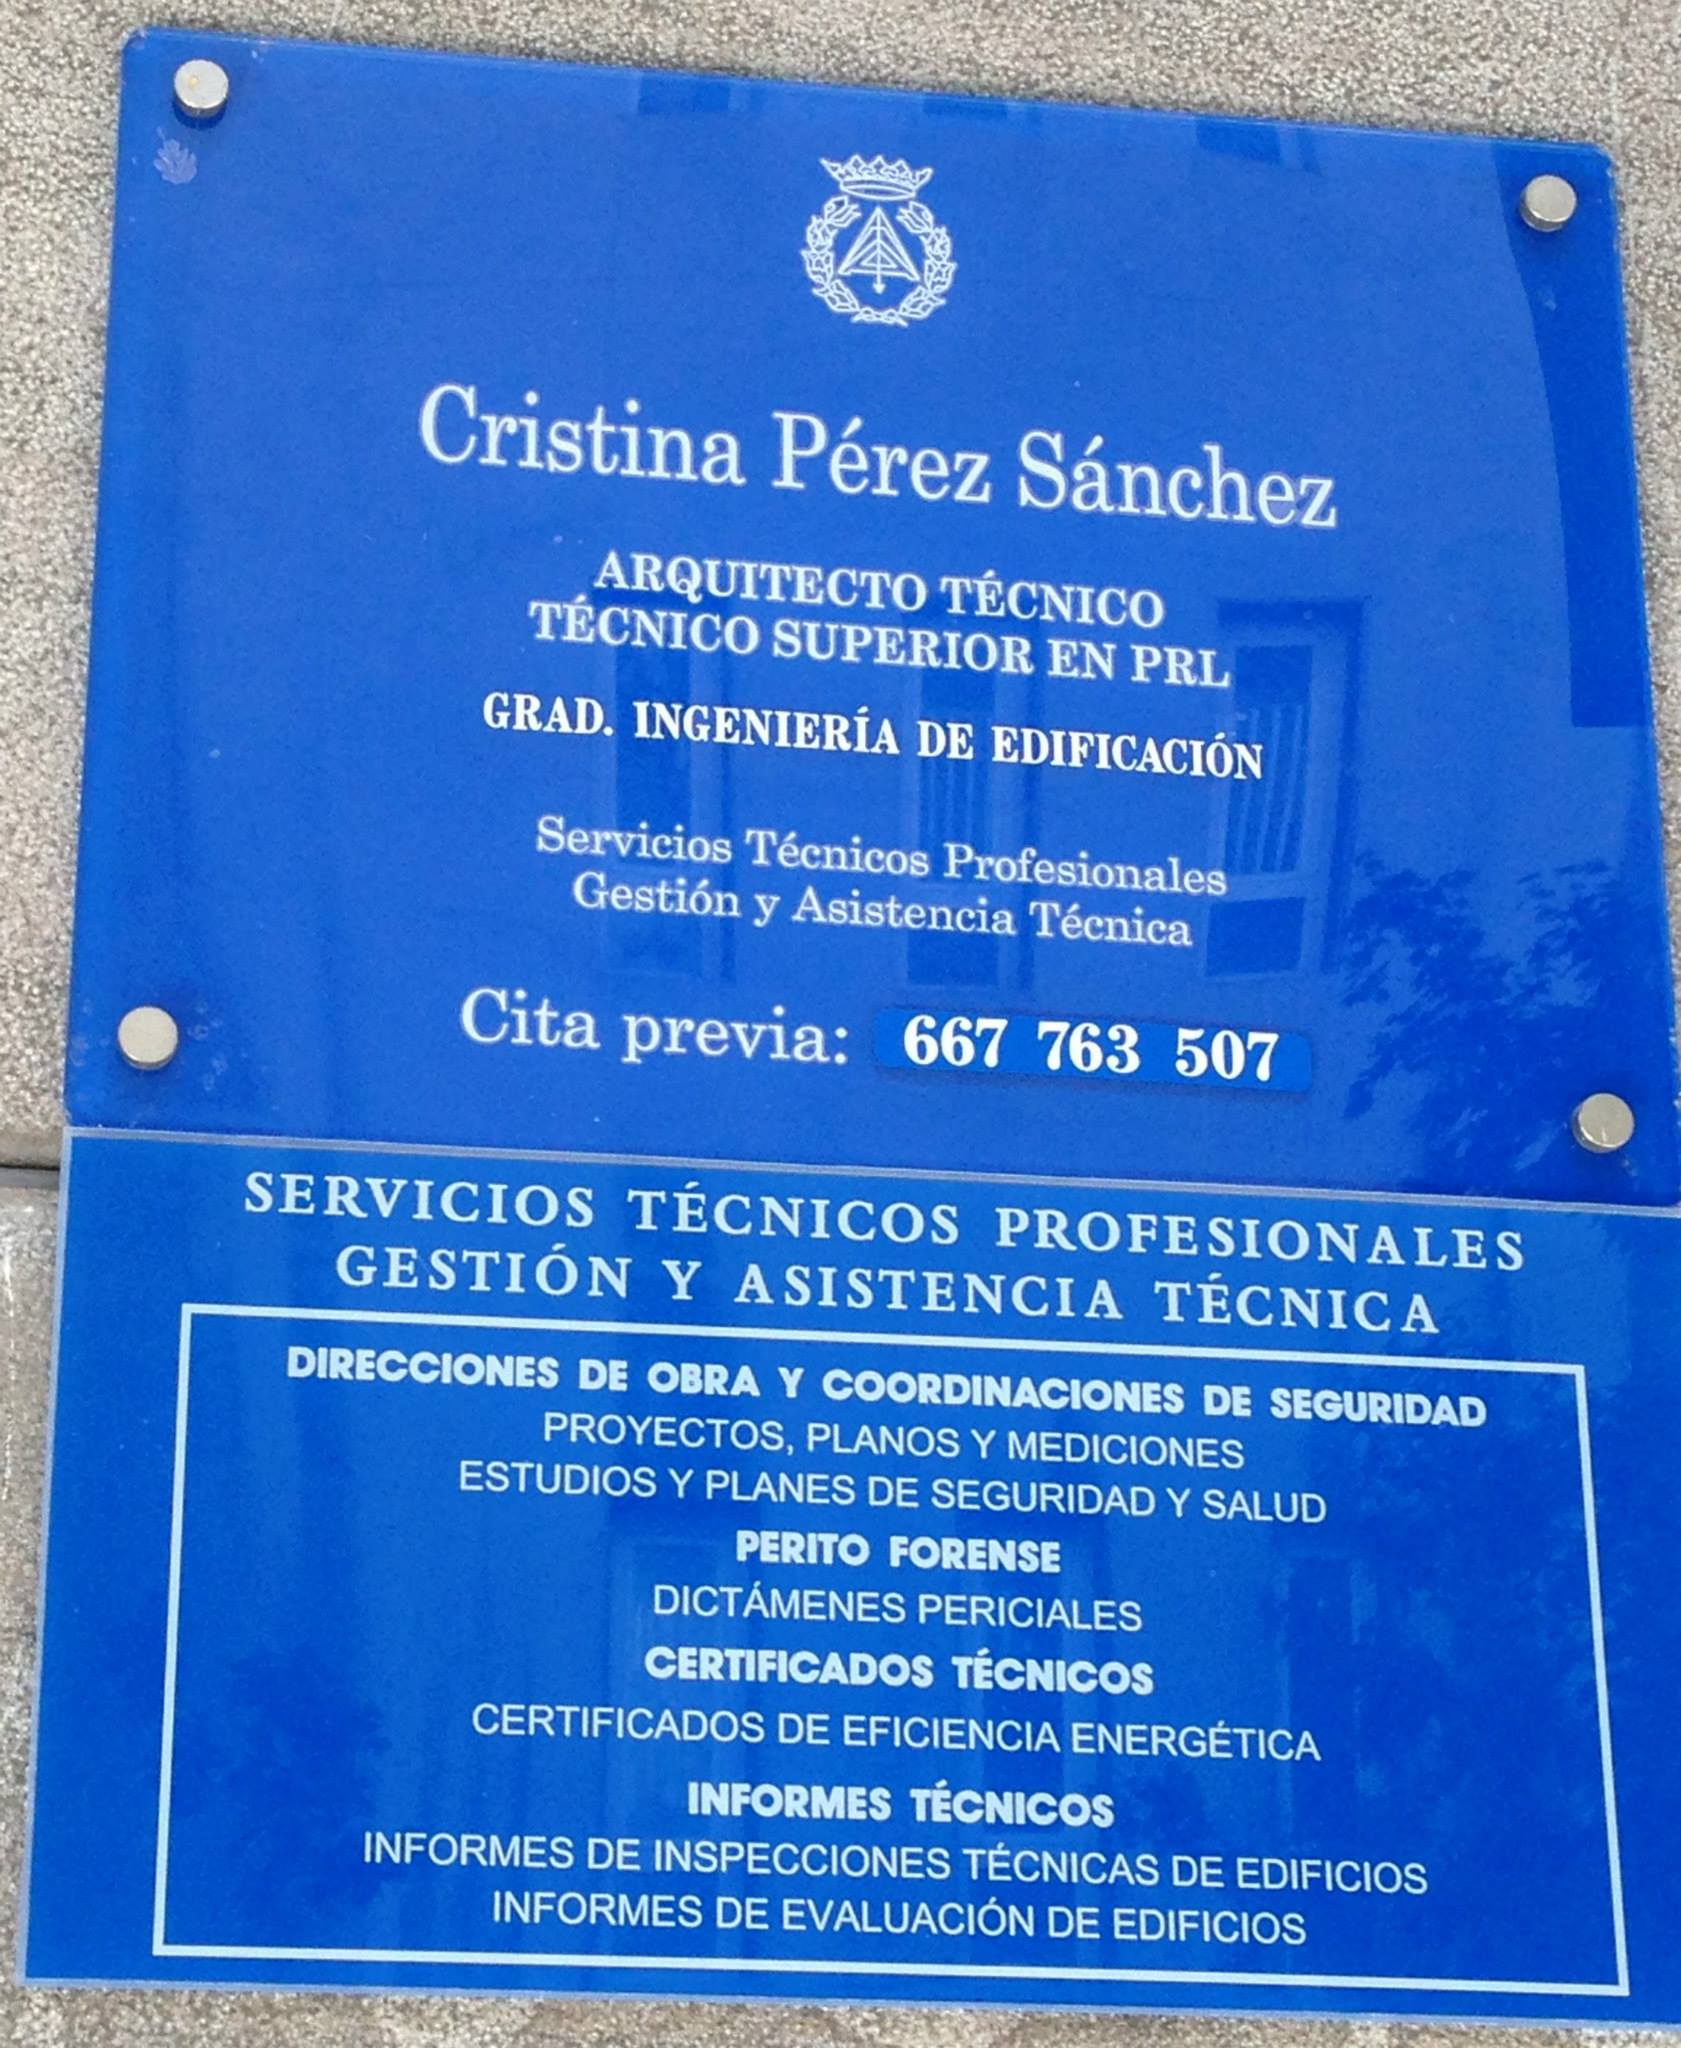 Cristina Pérez Sánchez